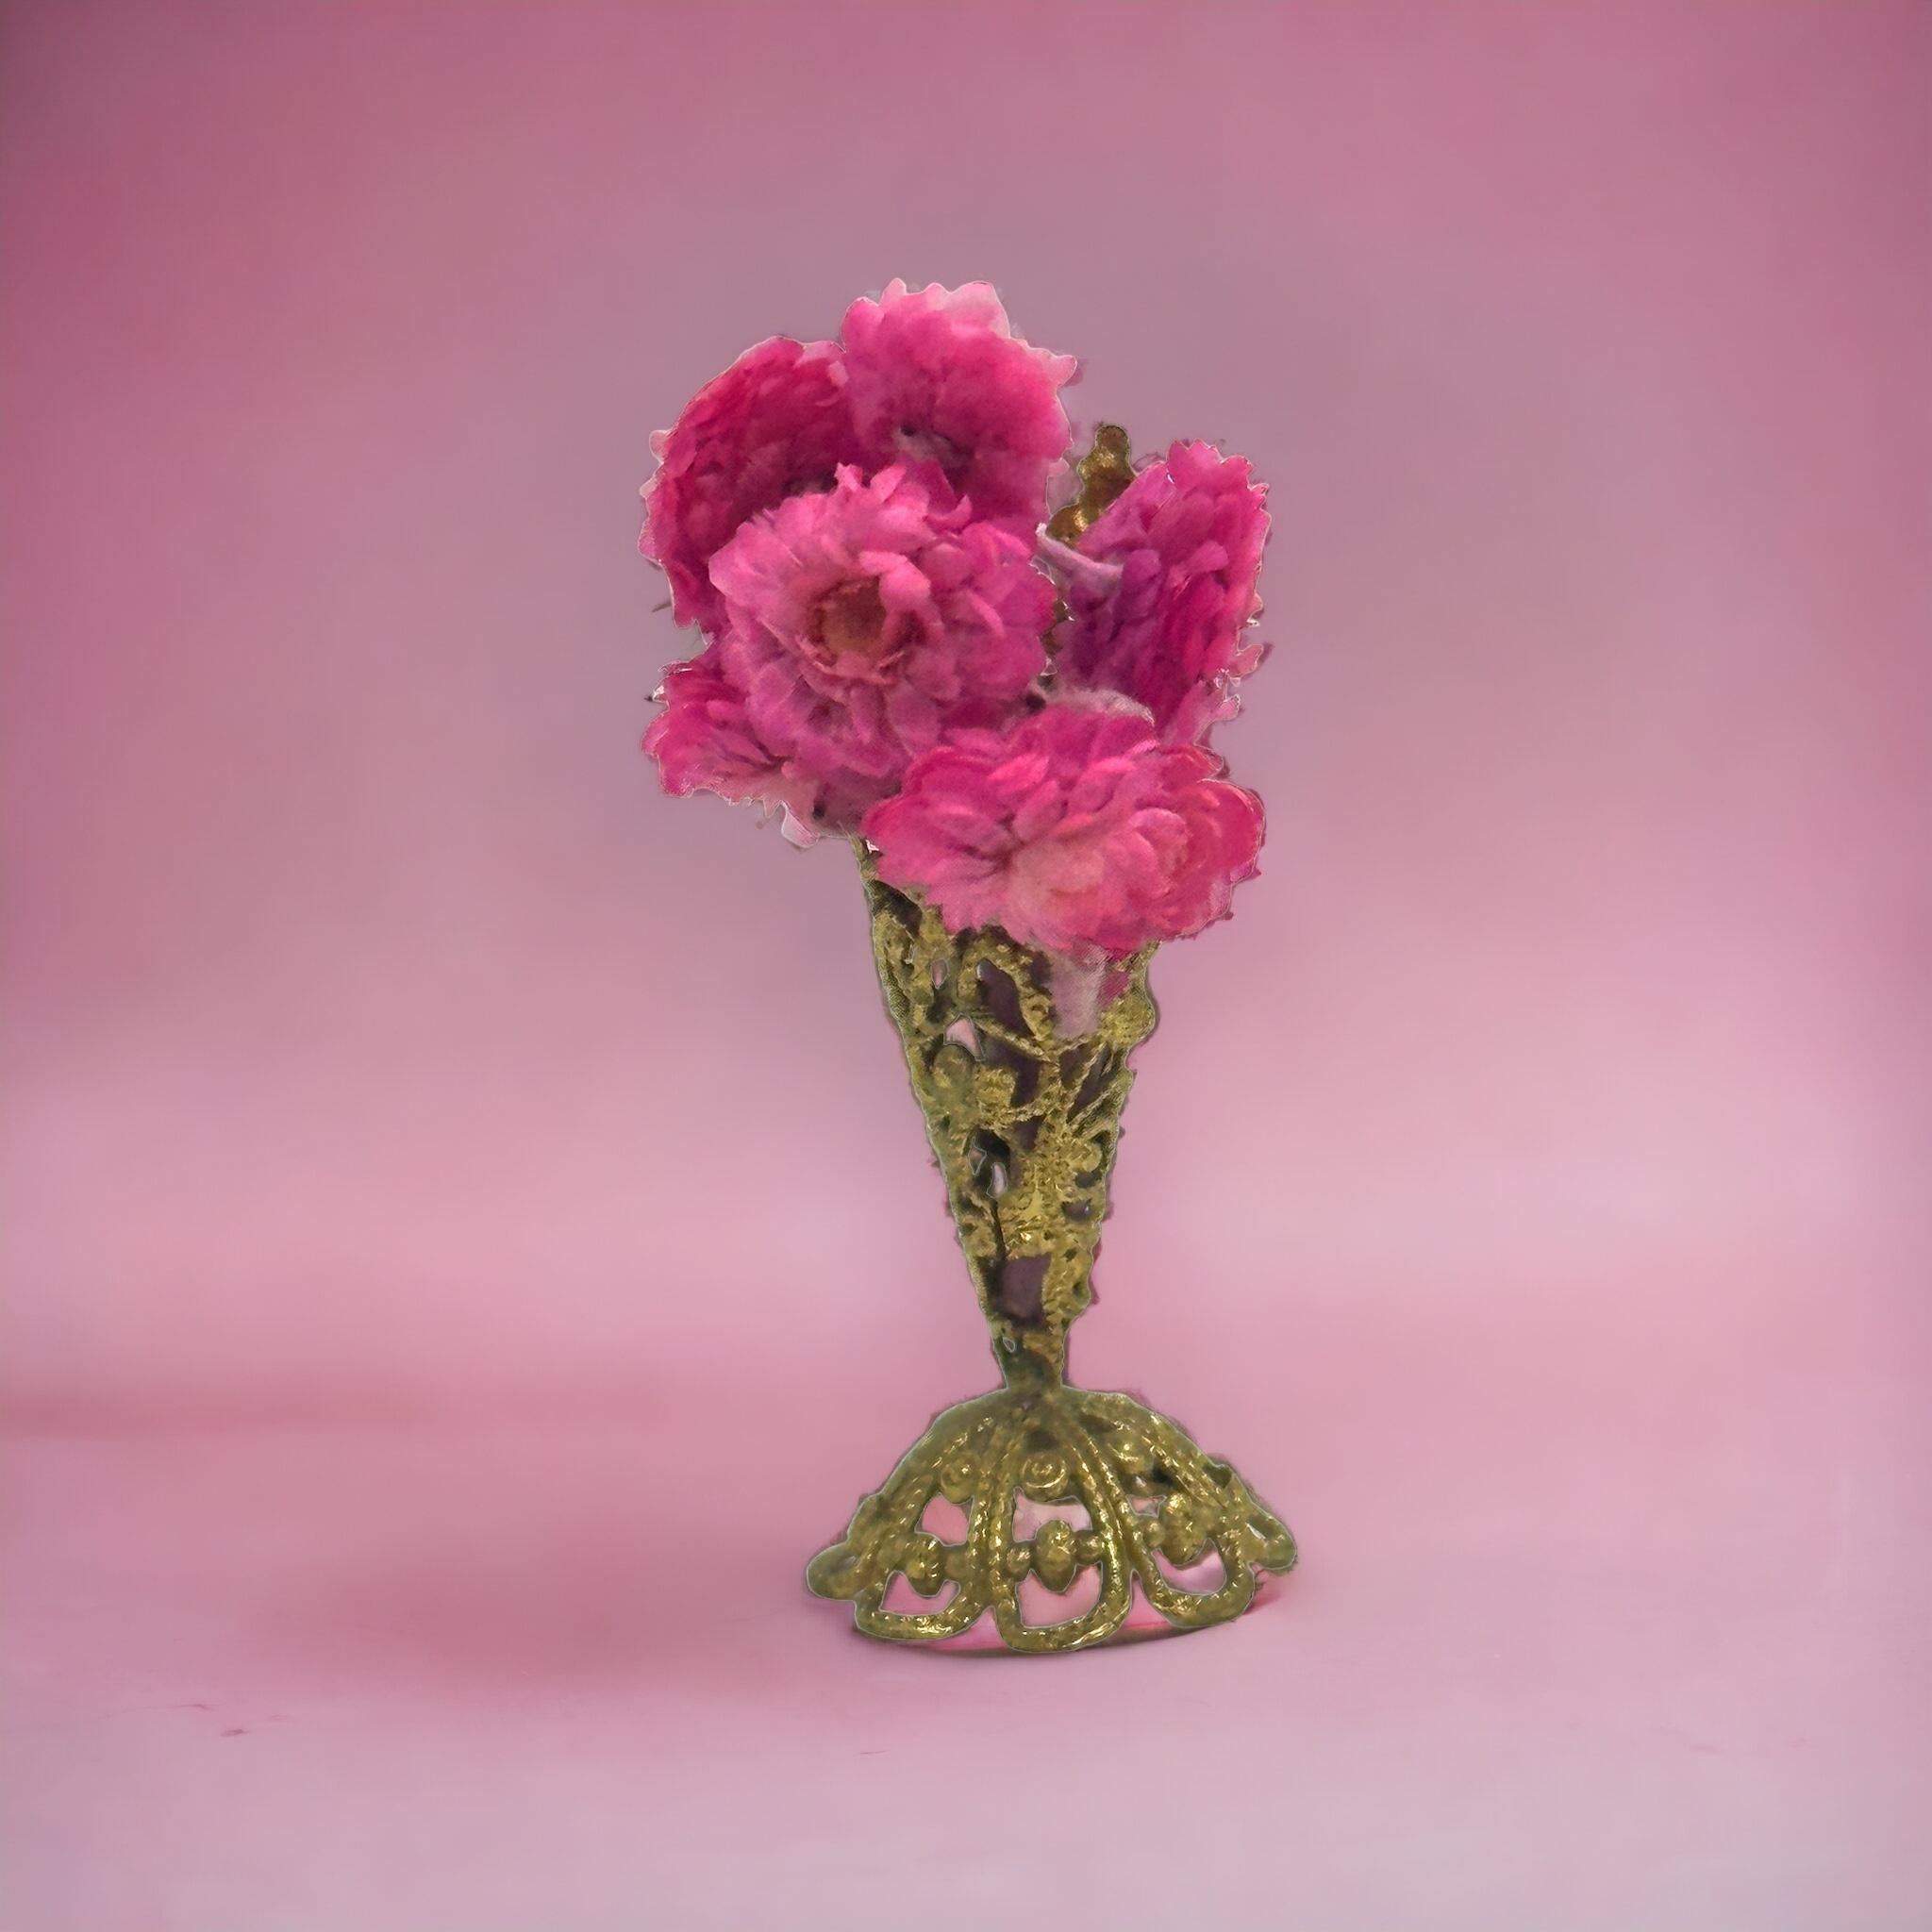 Diese seltene und exquisite Miniatur antiker deutscher Blumenständer Korb ist ein Muss für Puppenhaus und Puppe Sammler und Enthusiasten gleichermaßen. Mit seinem schönen, filigranen Design eignet es sich für jeden Raum und verleiht Ihrem Puppenhaus